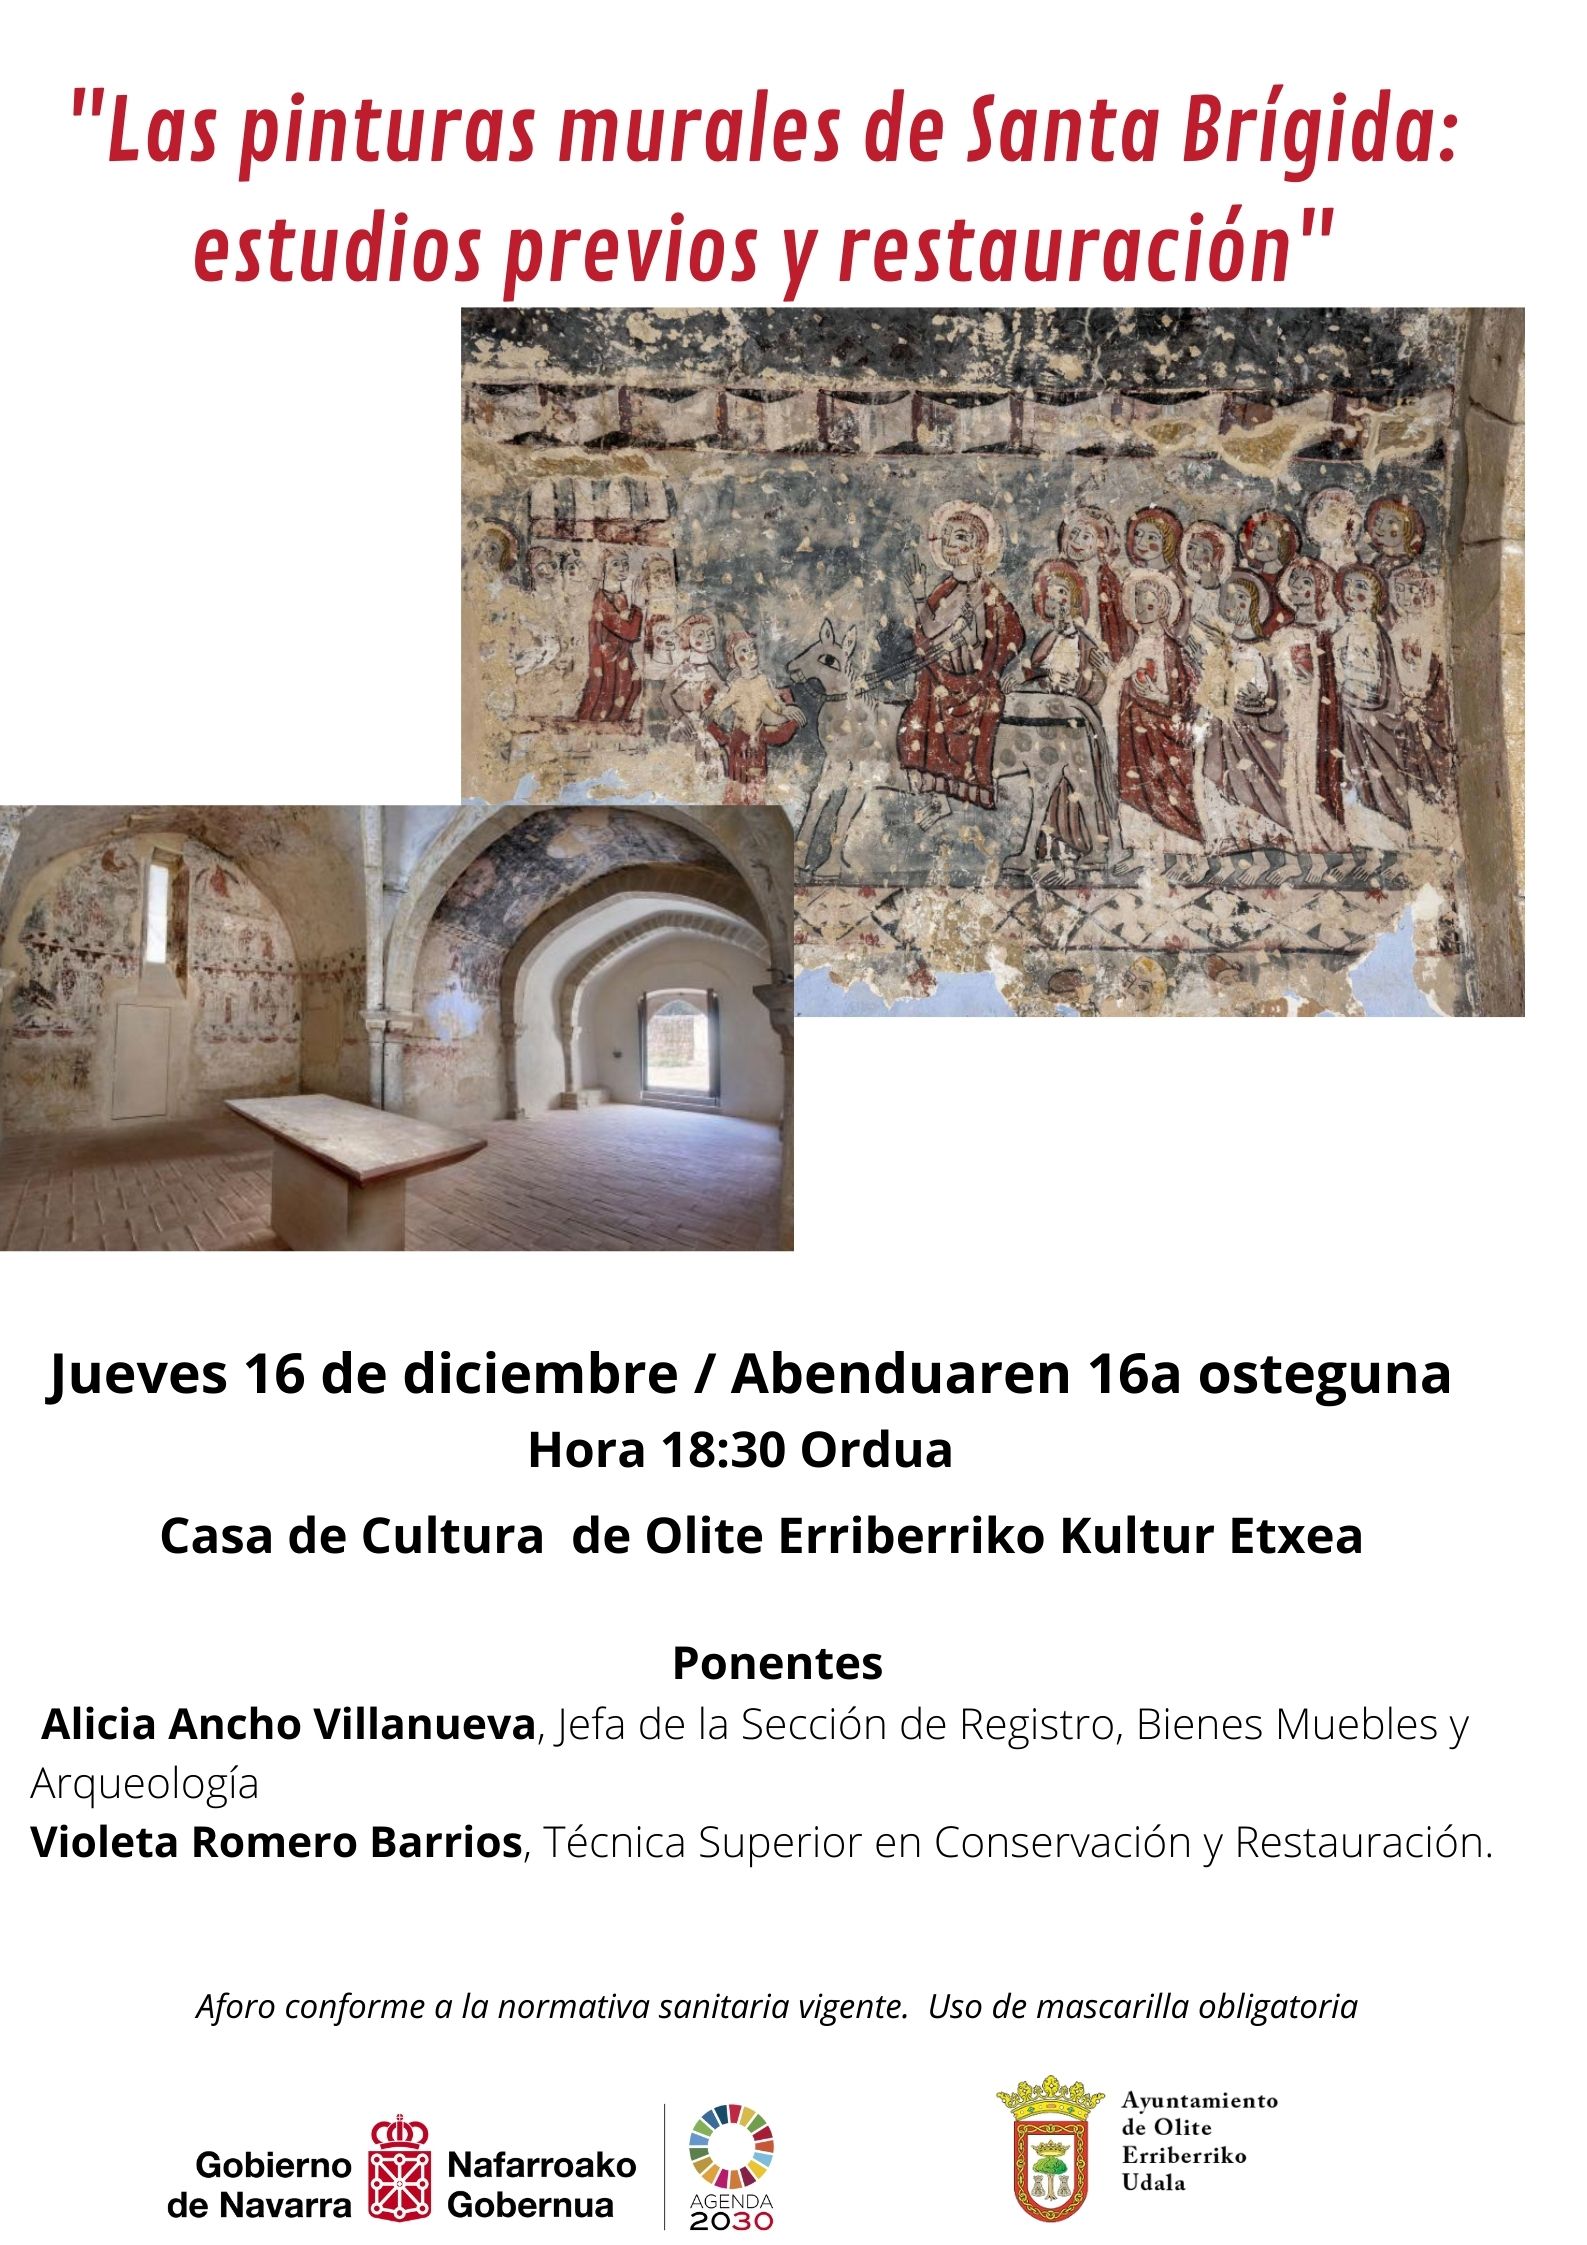 Las pinturas murales de Santa Brígida: estudios previos y restauración